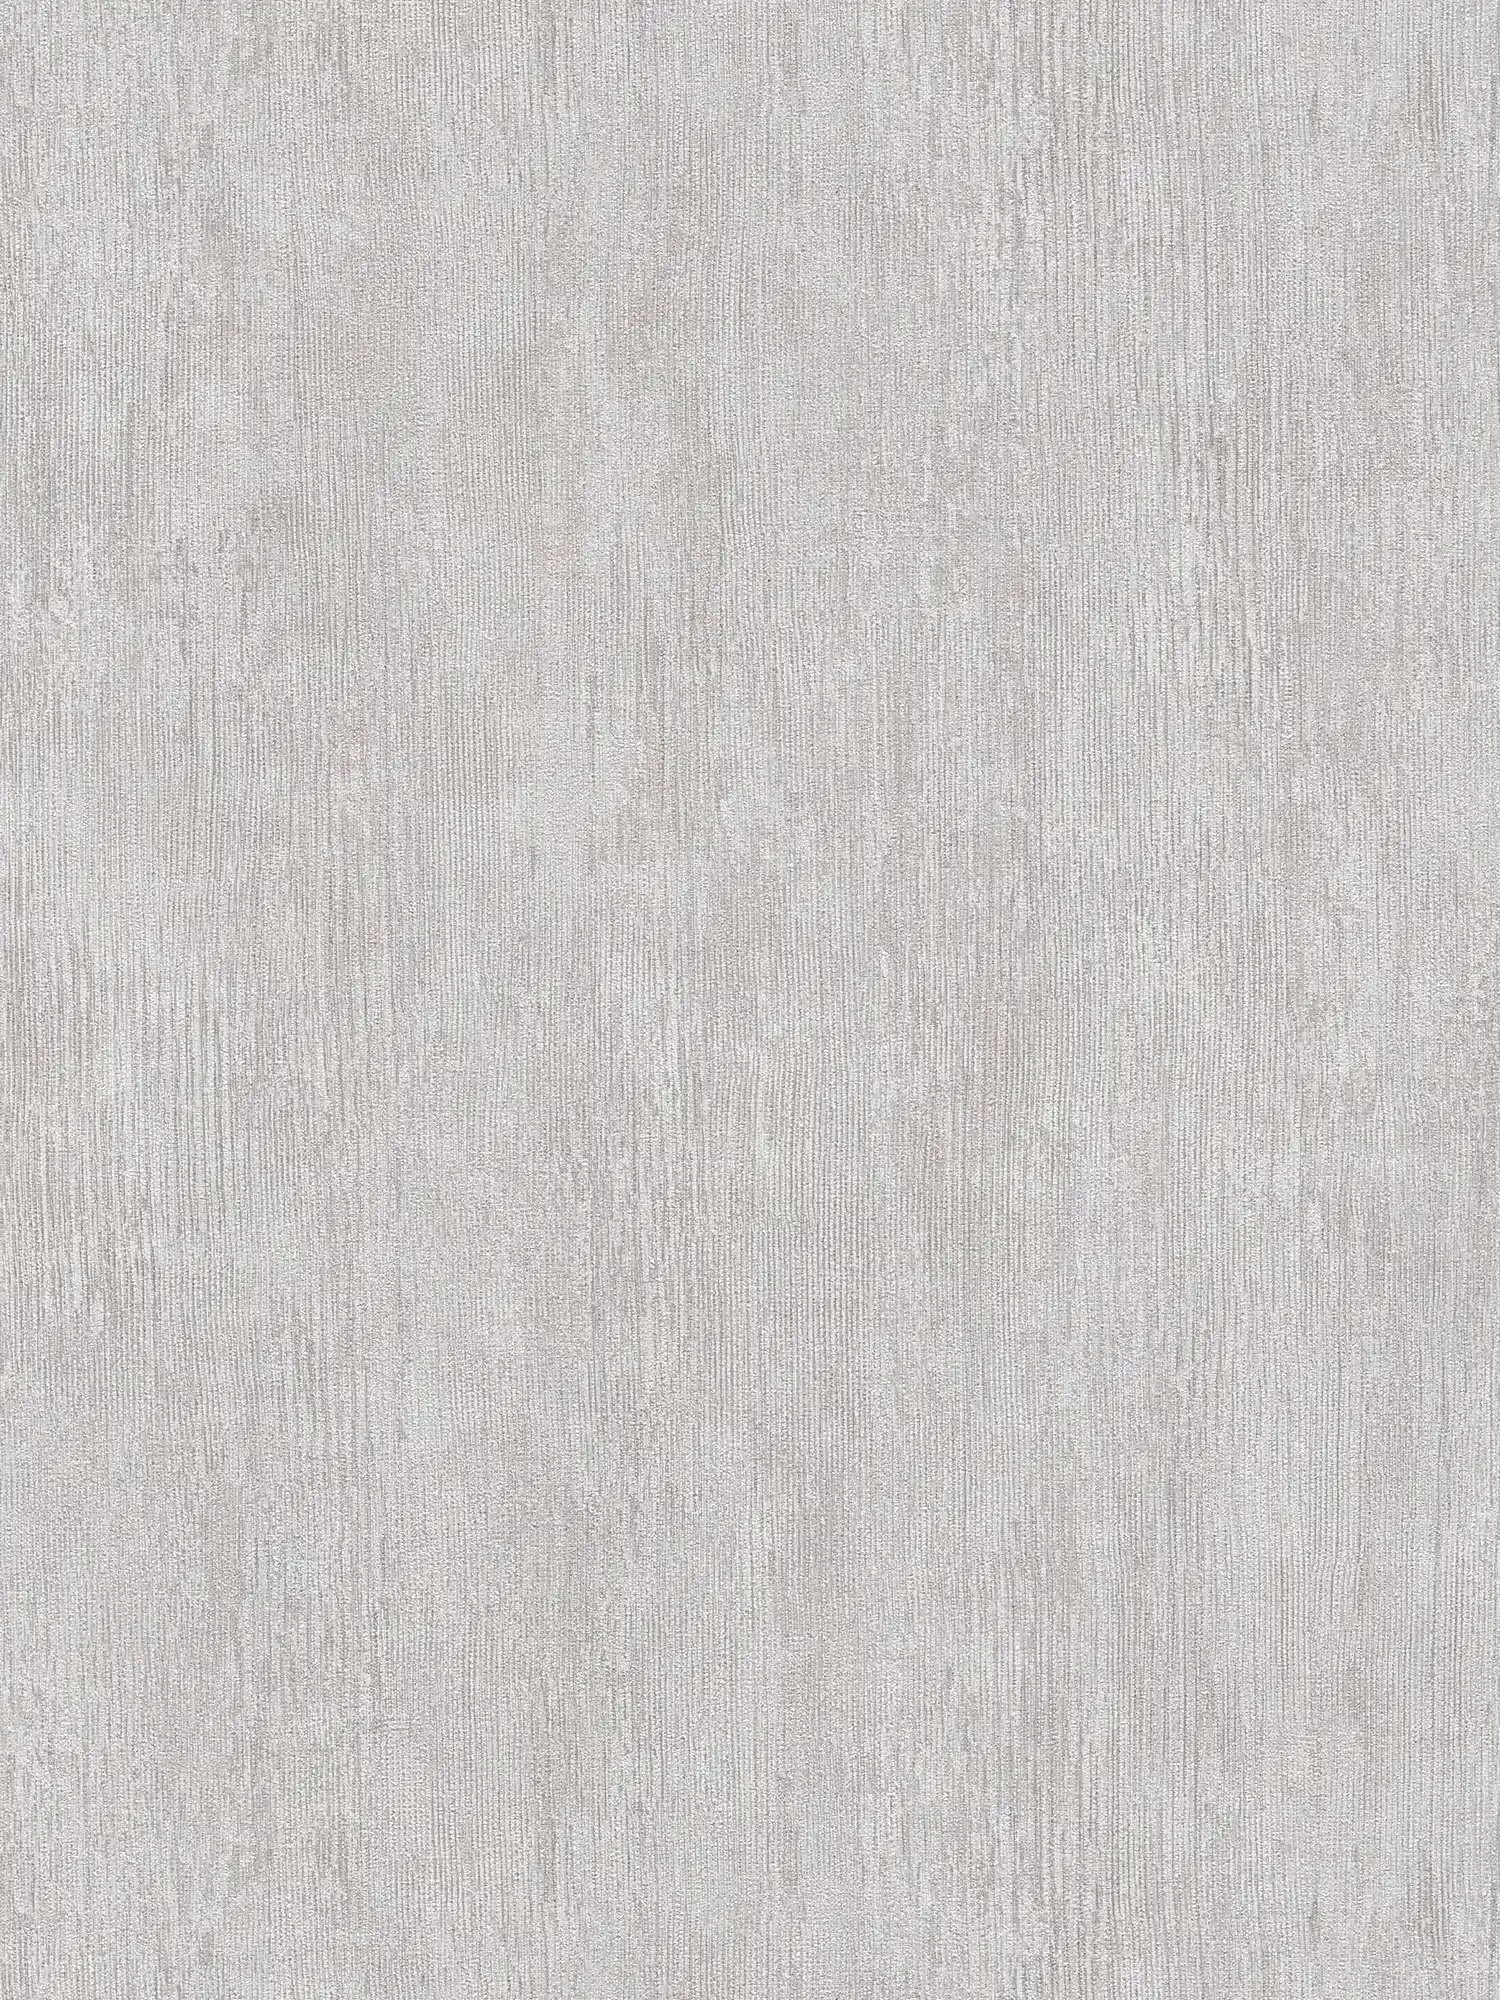 Papel pintado de diseño acanalado, estilo industrial - gris, blanco
